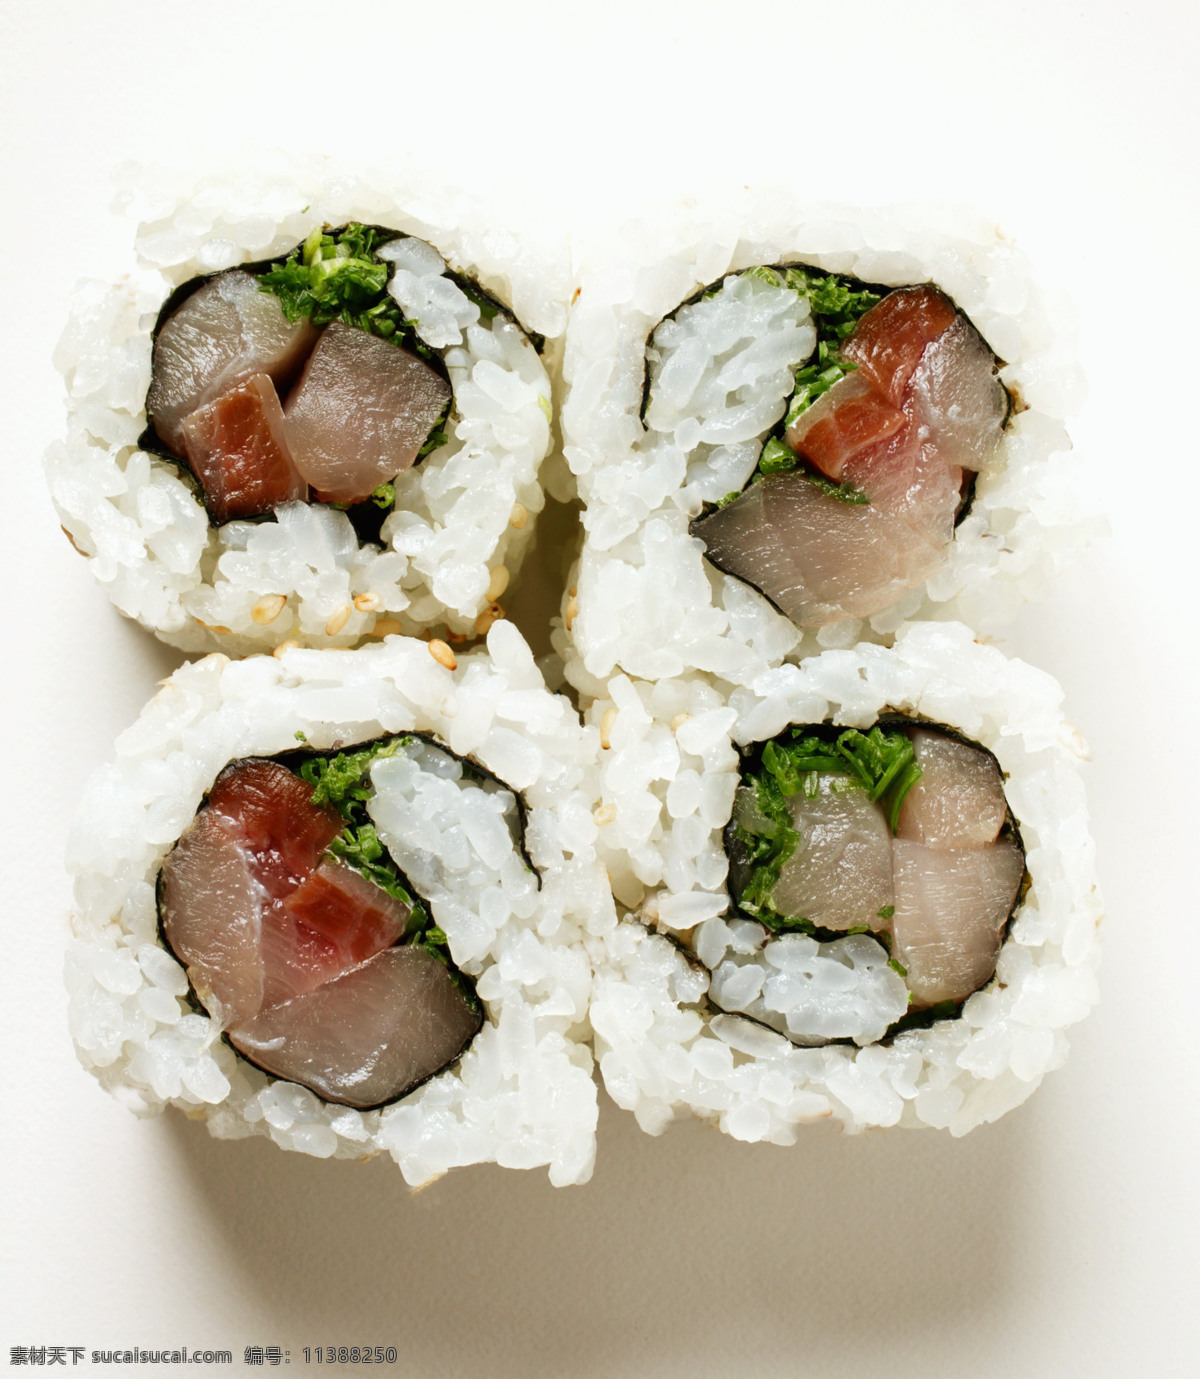 寿司60 寿司 寿司图片 美食 美味 日本美食 外国美食 餐饮美食 白色